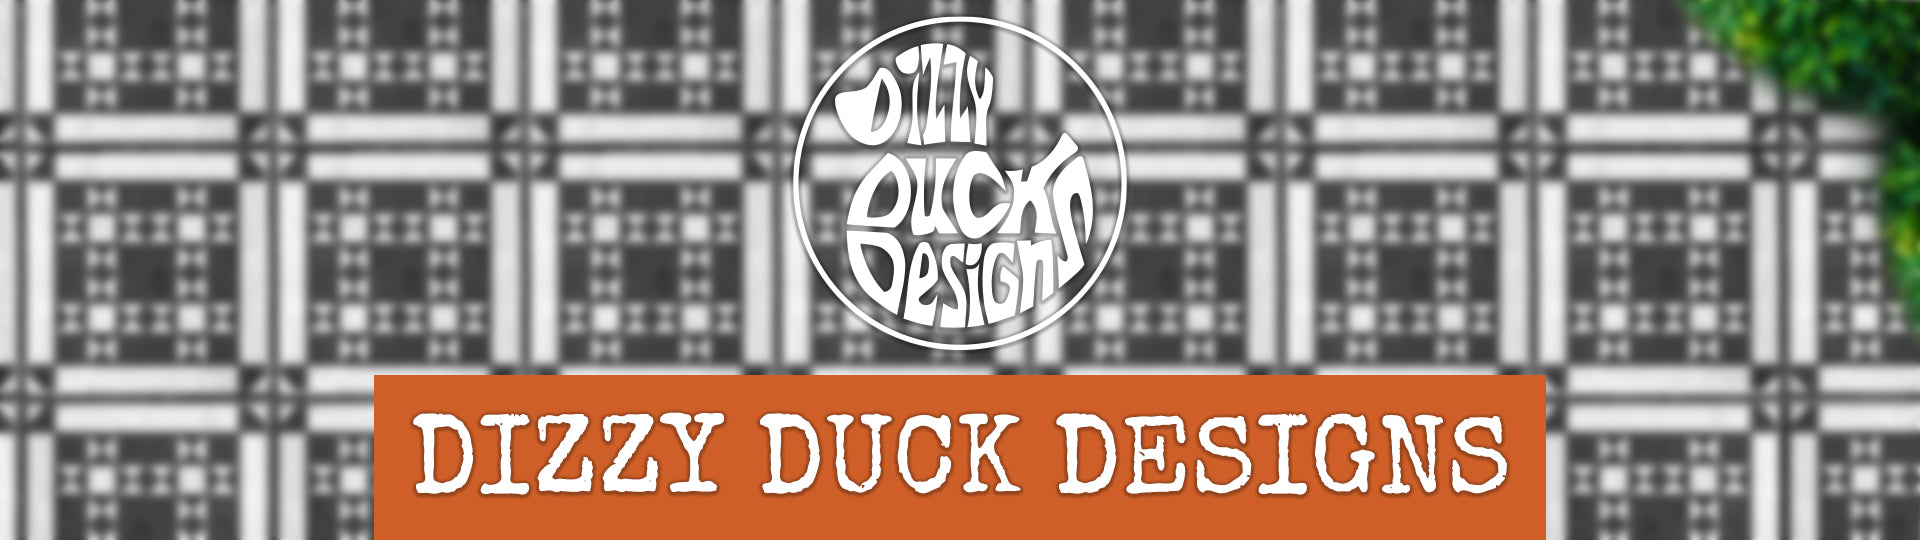 dizzy duck designs banner with logo